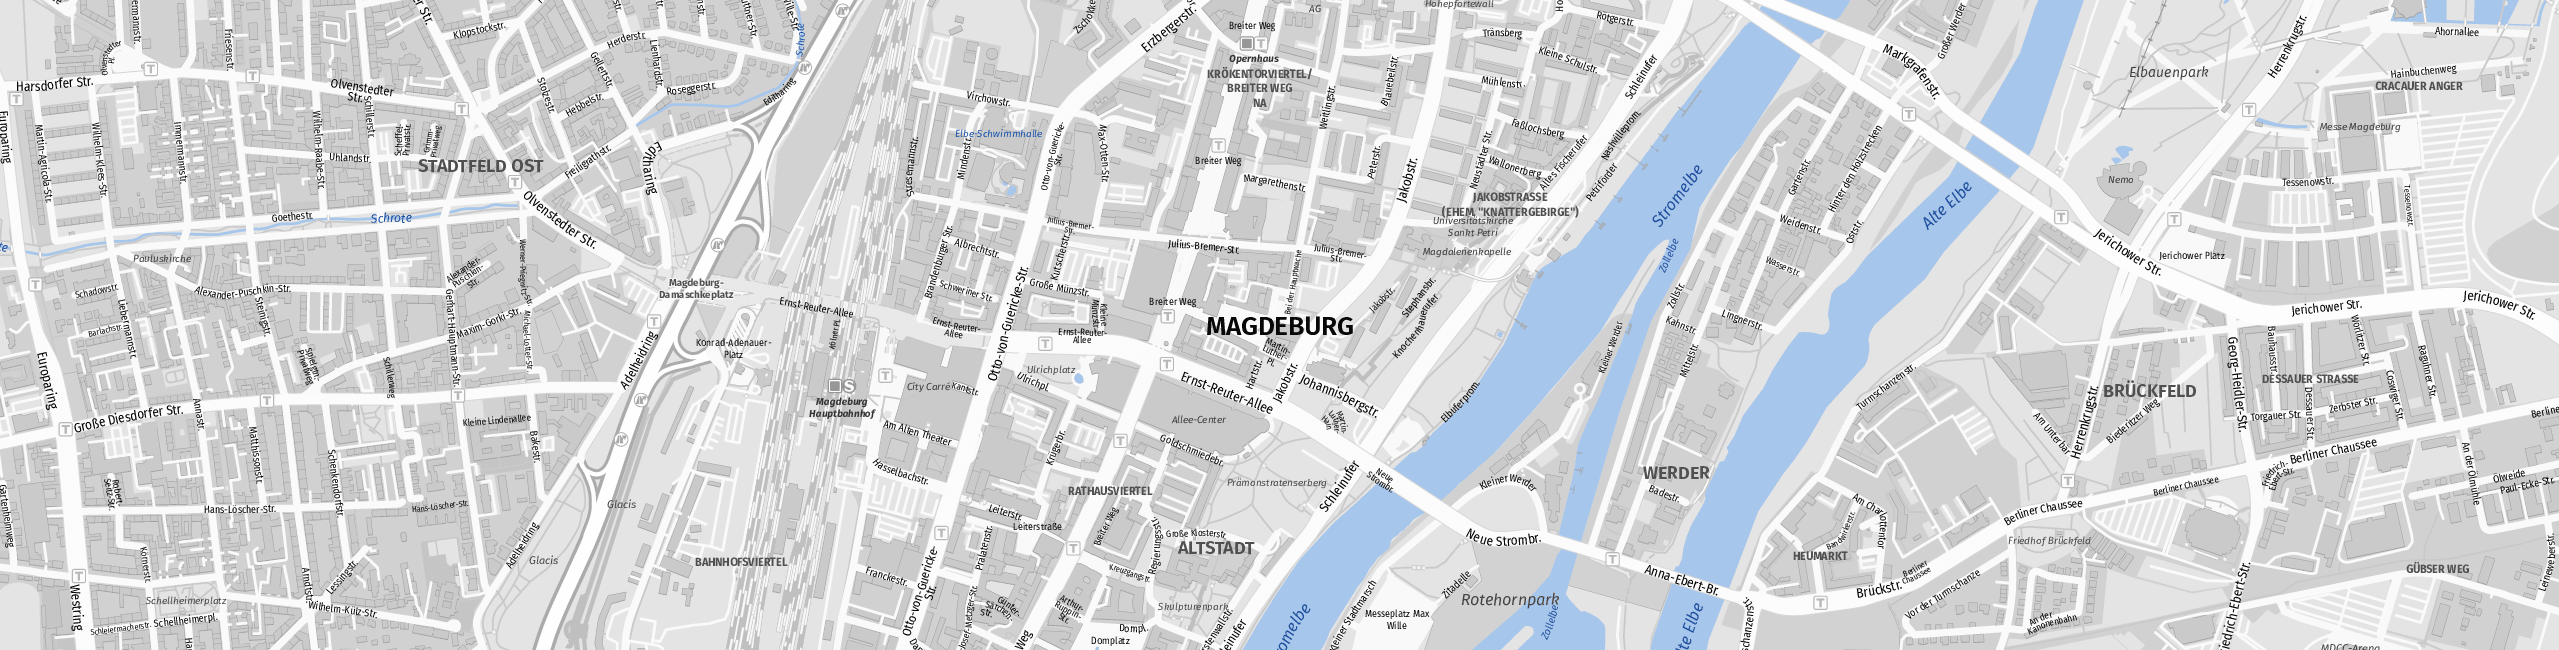 Stadtplan Magdeburg zum Downloaden.